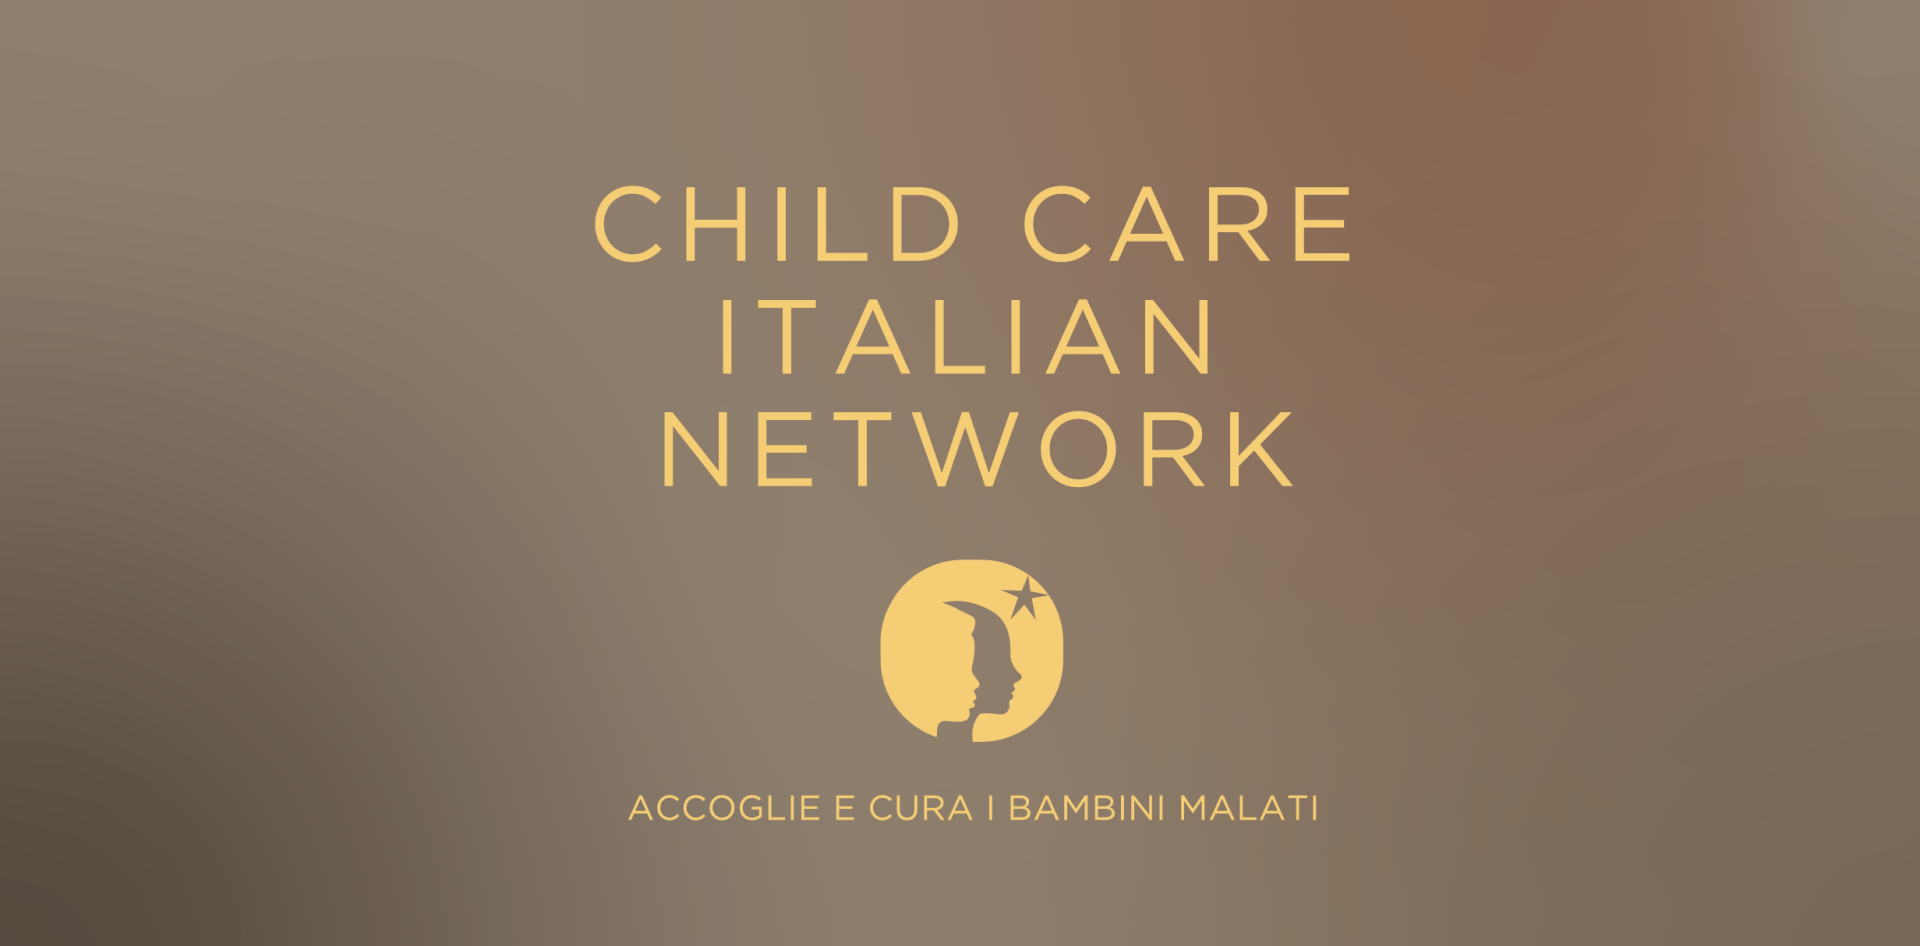 Piede Child Care Italian Network